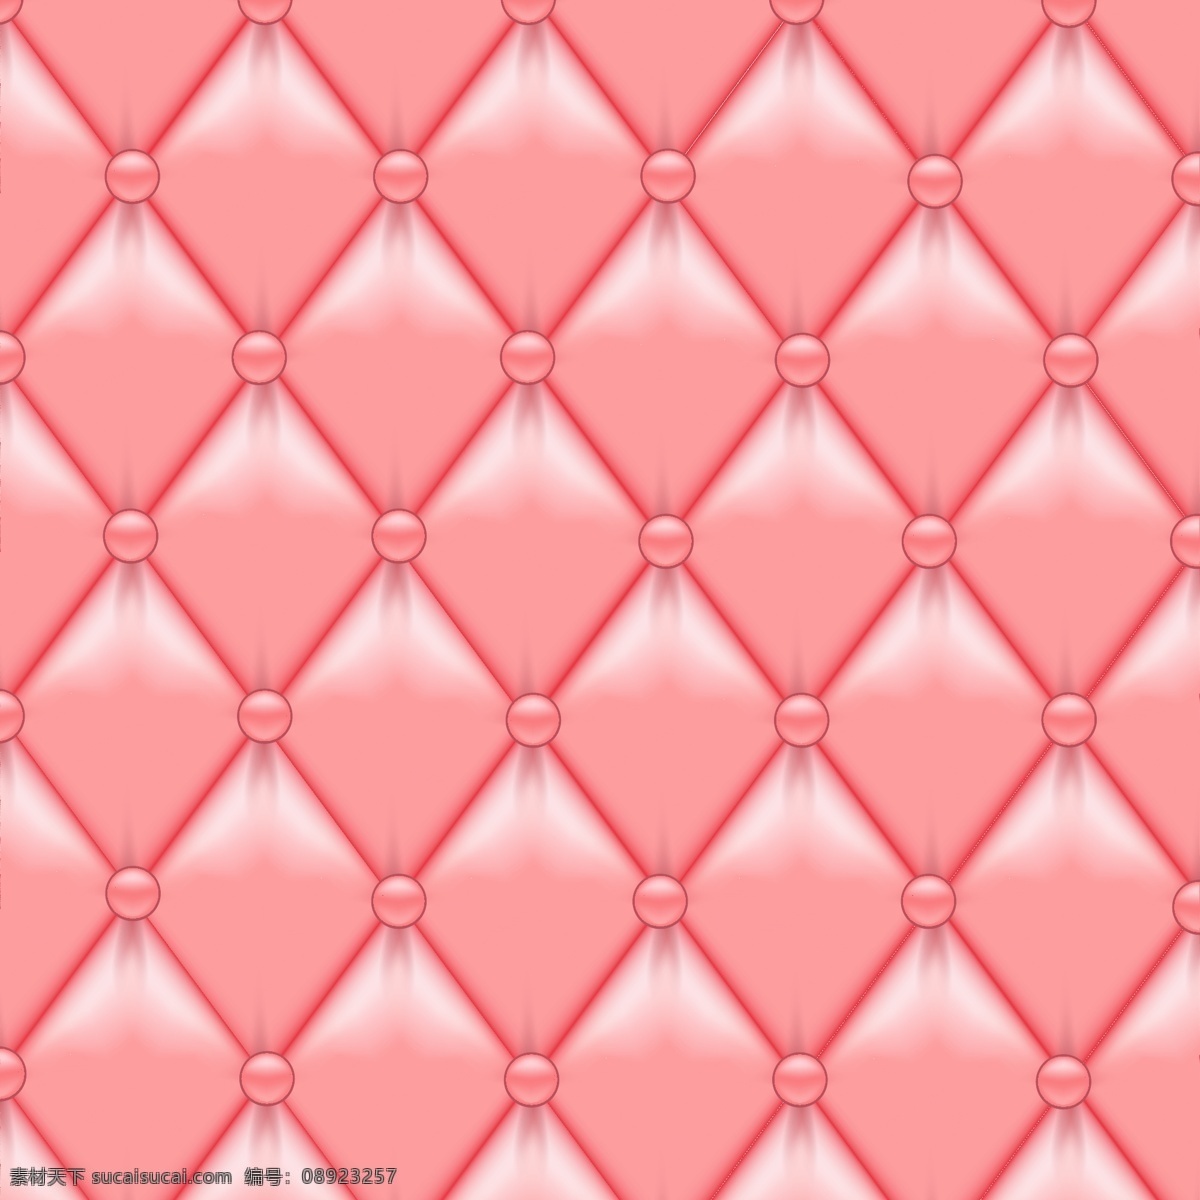 粉红色 沙发 革 现实 背景 背景壁纸 杂项物品 模板和模型